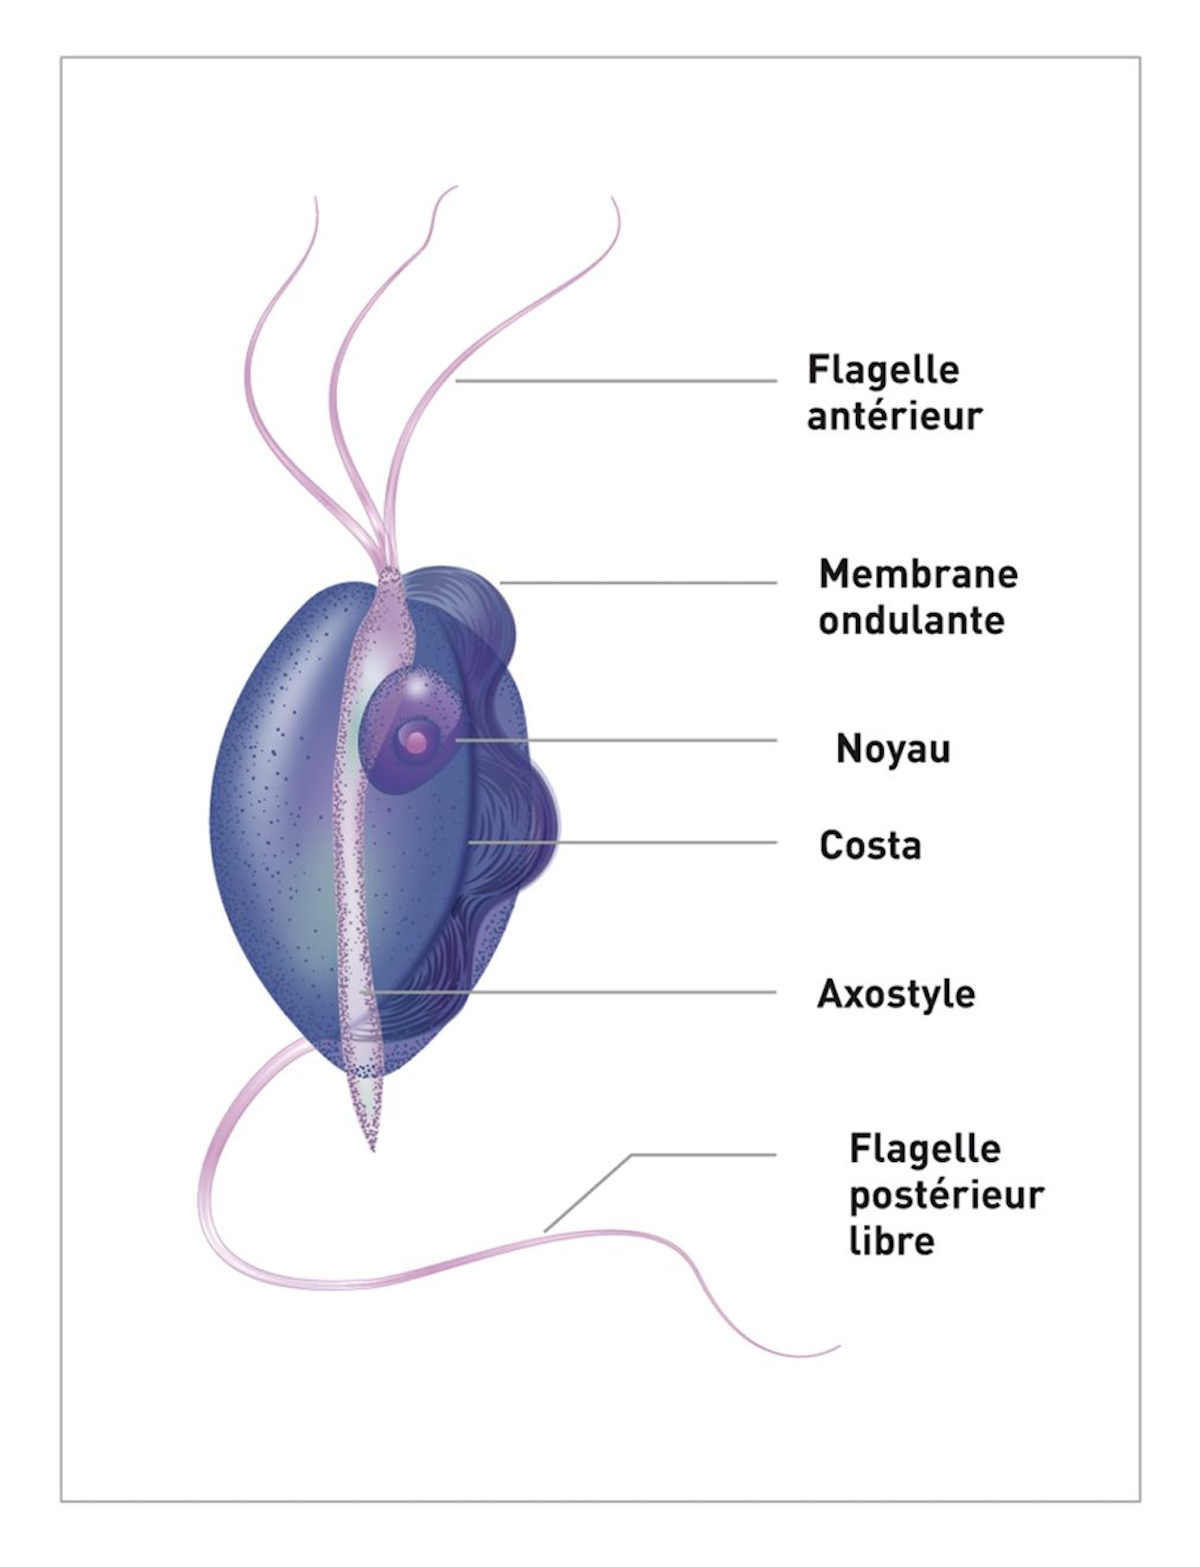 T. fœtus mesure environ 10-26 µm de long et 3-5 µm de large, et il a une forme fuselée, souvent qualifiée de « poire ». Chaque parasite possède 3 flagelles antérieurs pour la mobilité.